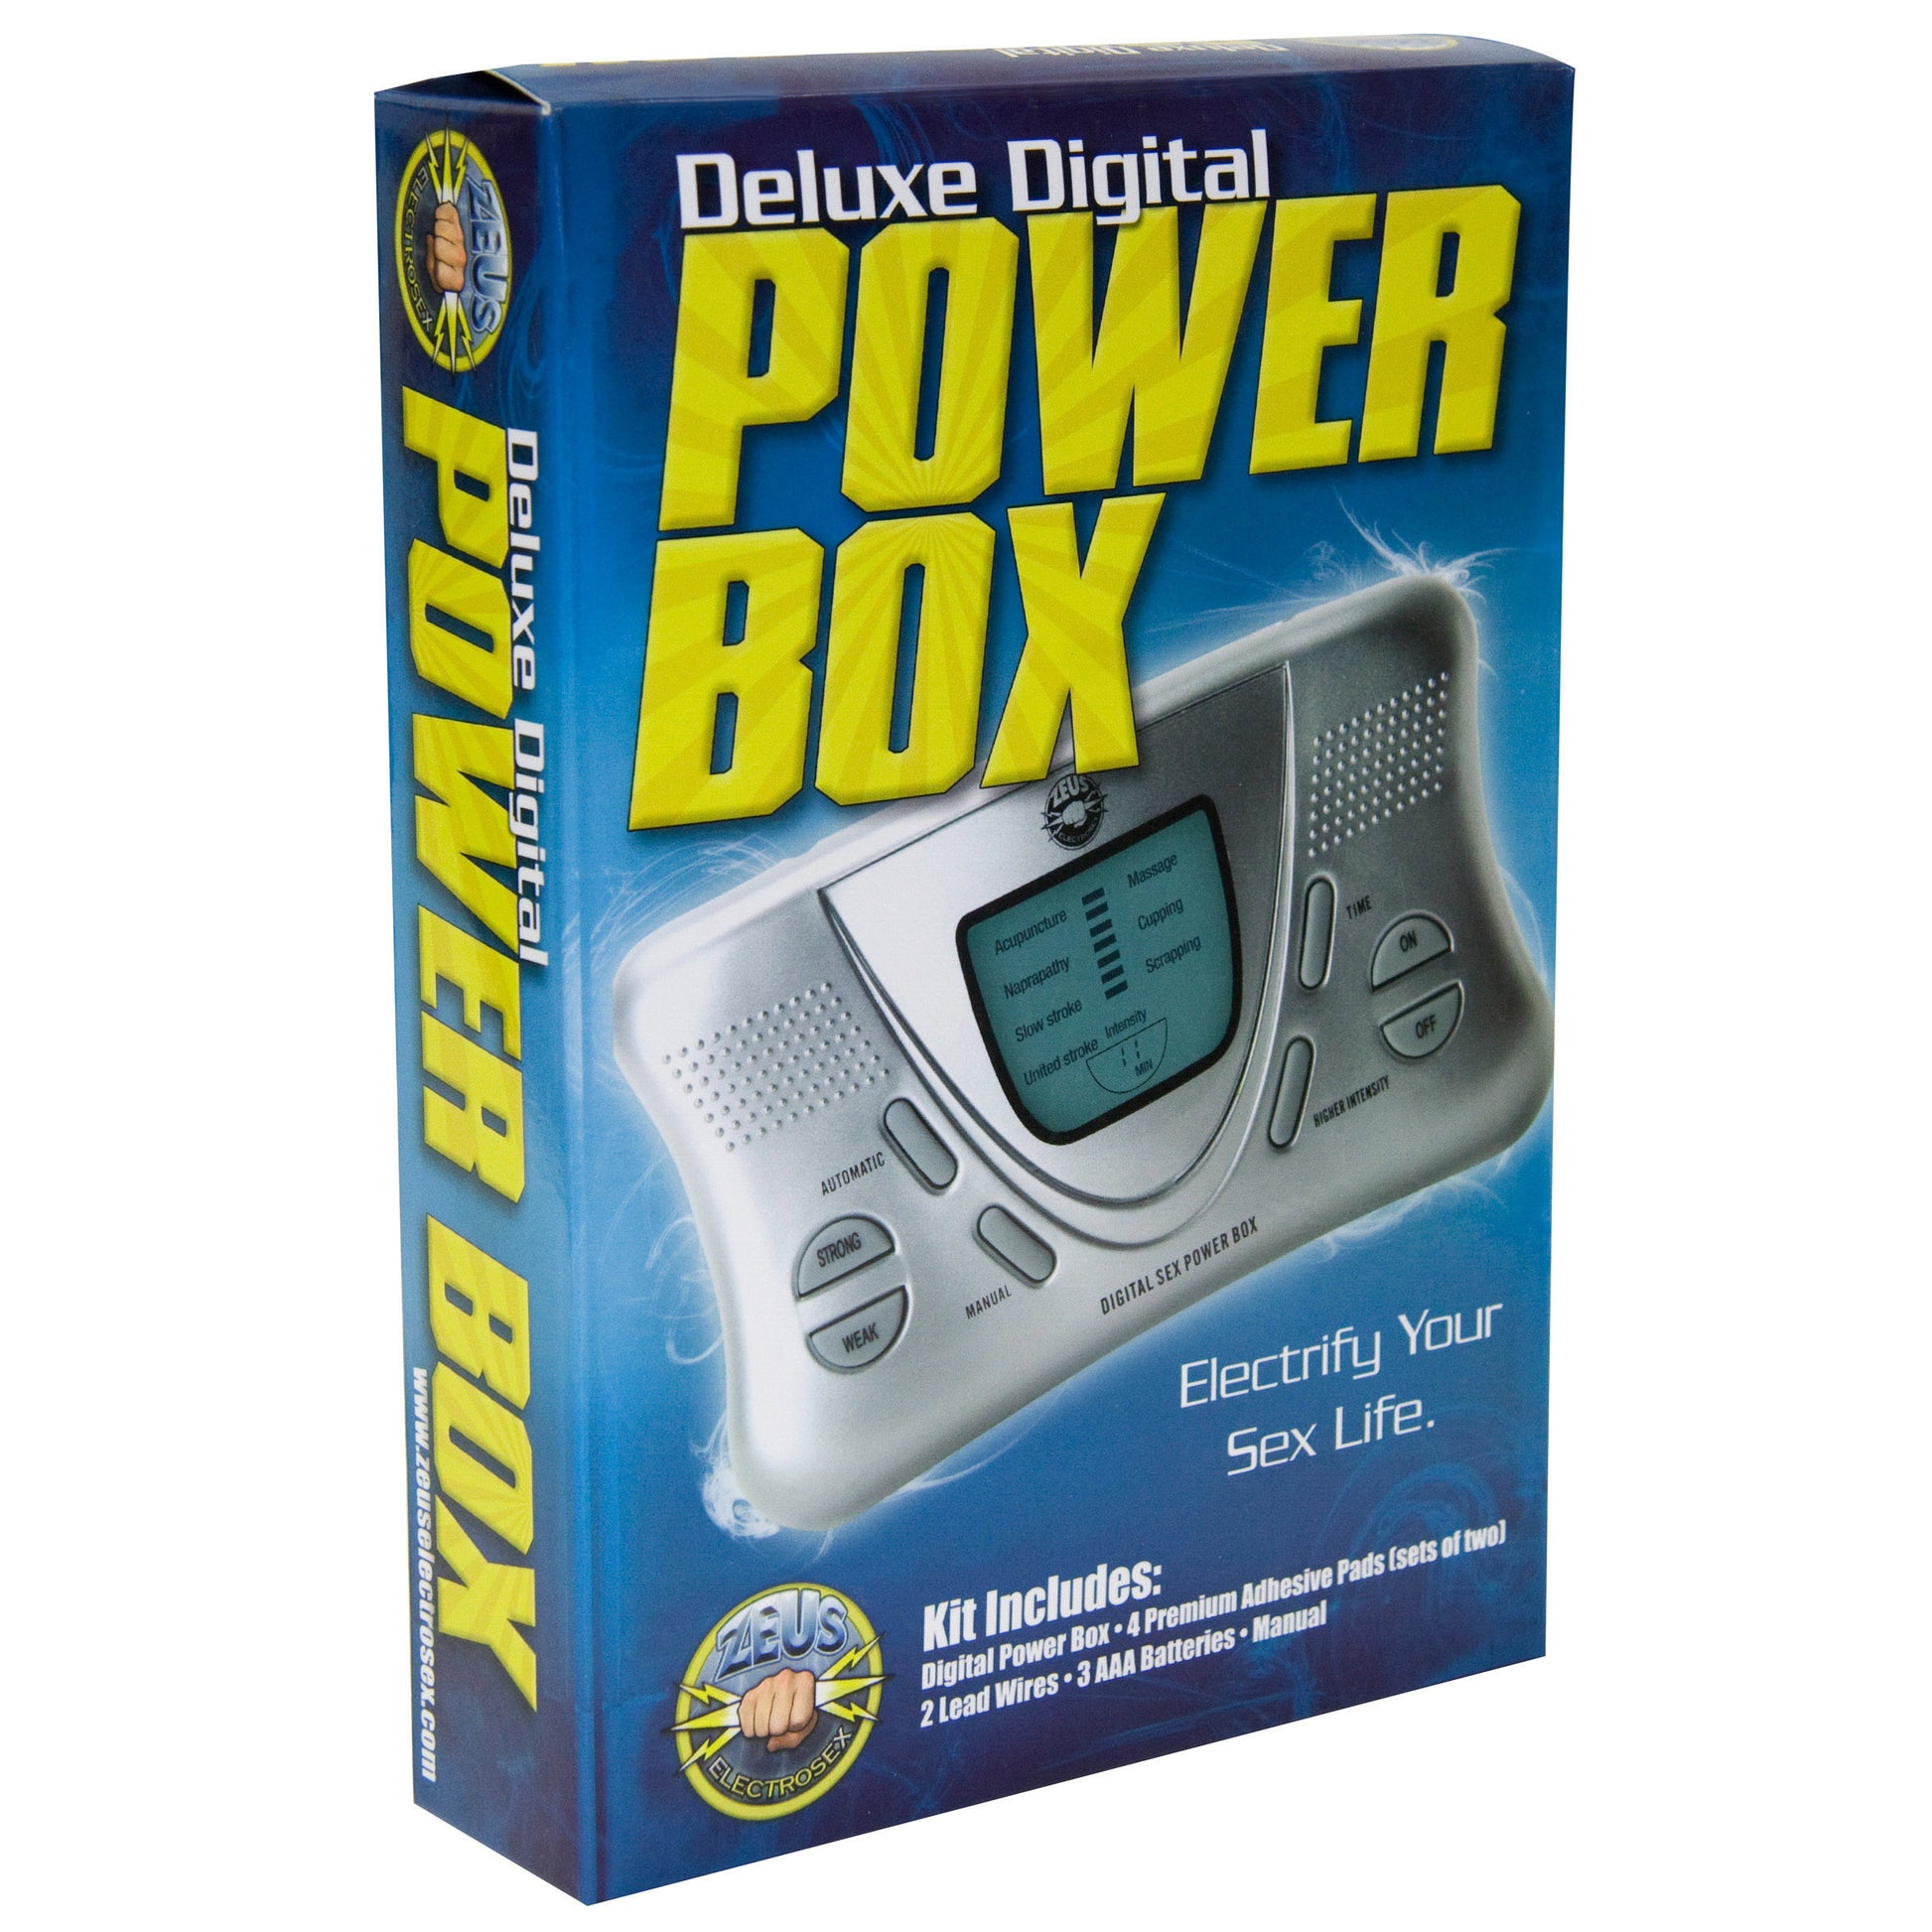 Zeus Electrosex Deluxe Digital Power Box - UABDSM